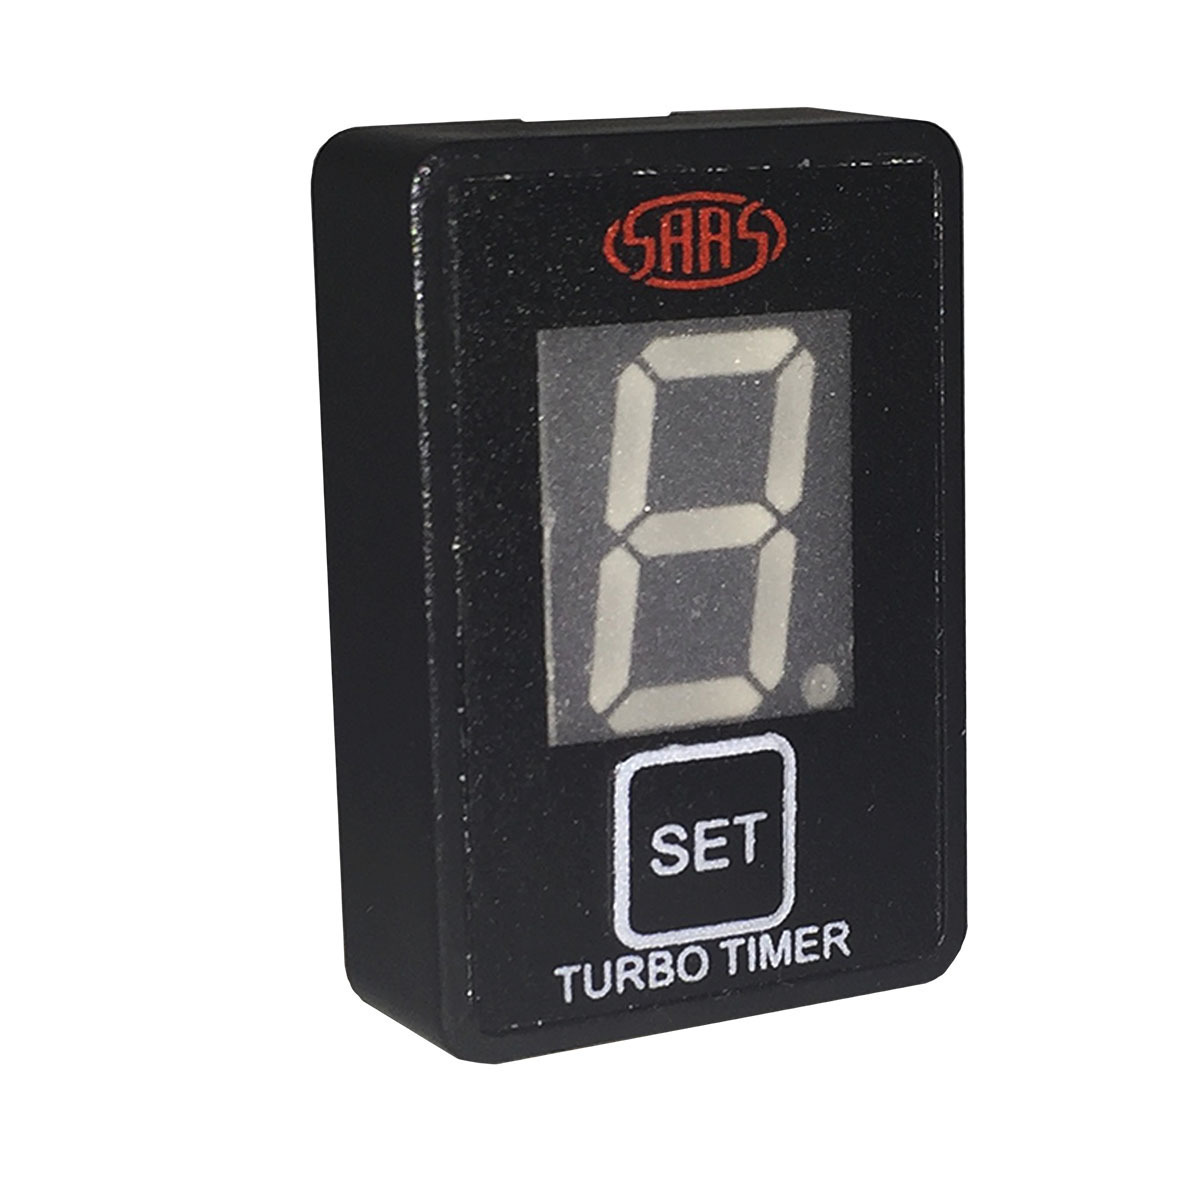 Turbo Timer Digital Switch Gauge Auto Toyota 32 x 22